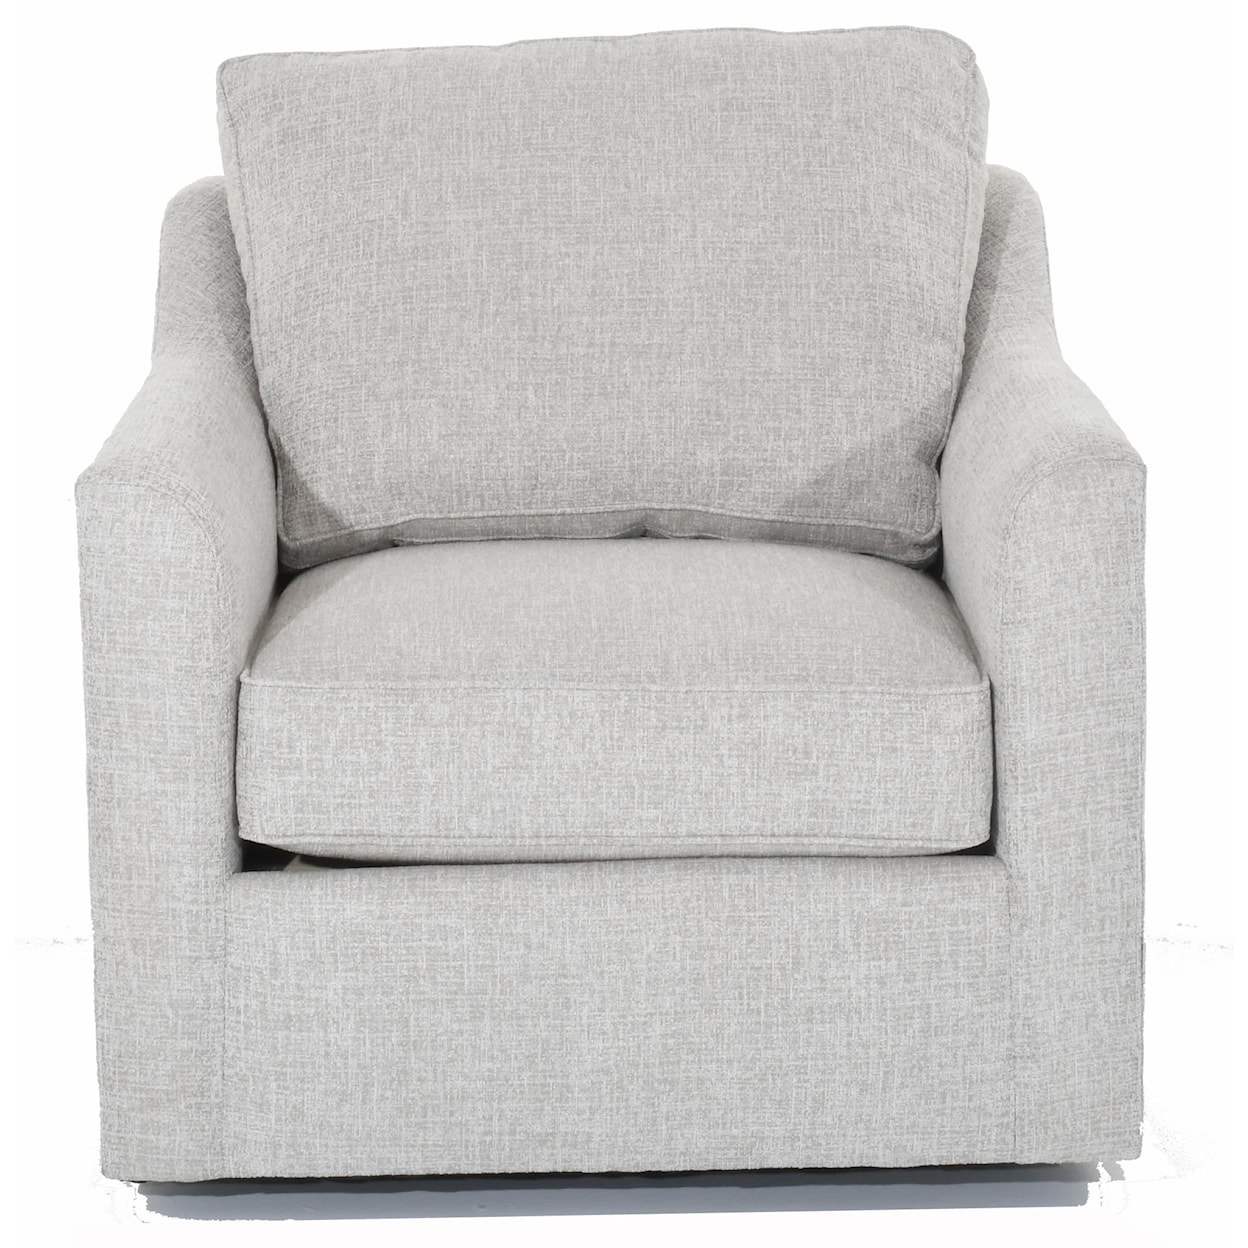 Huntington House Simplicity Customizable Tux Arm Swivel Chair